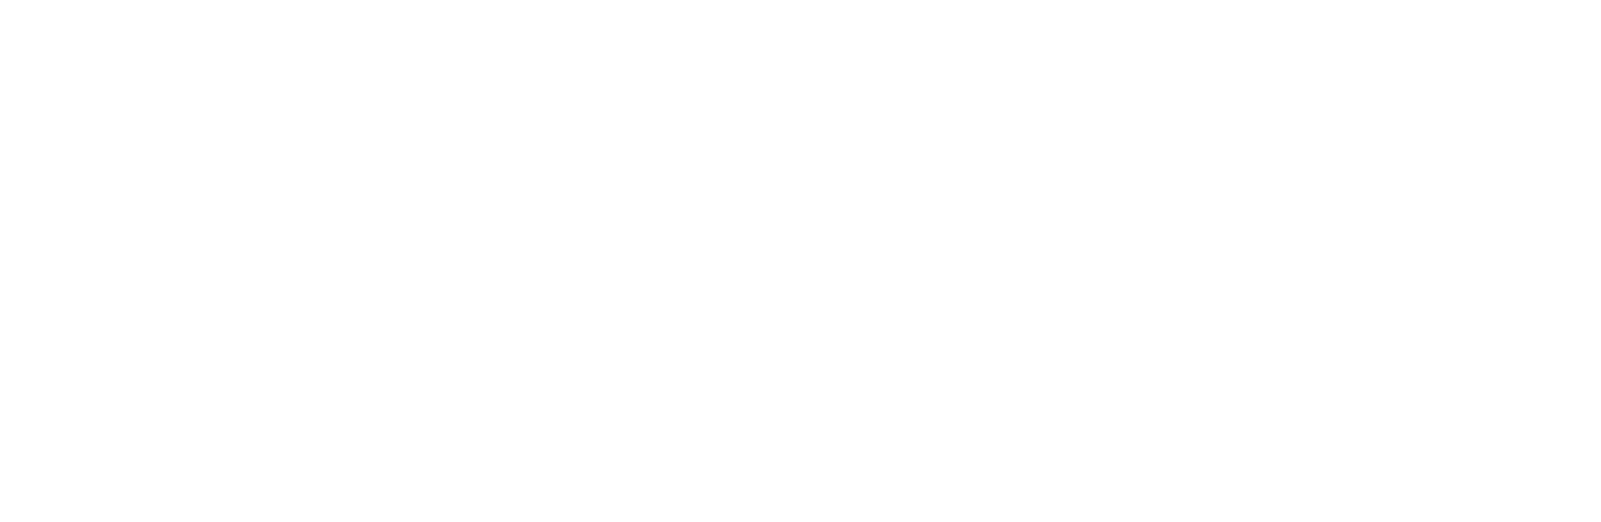 Corebridge Financial logo grand pour les fonds sombres (PNG transparent)